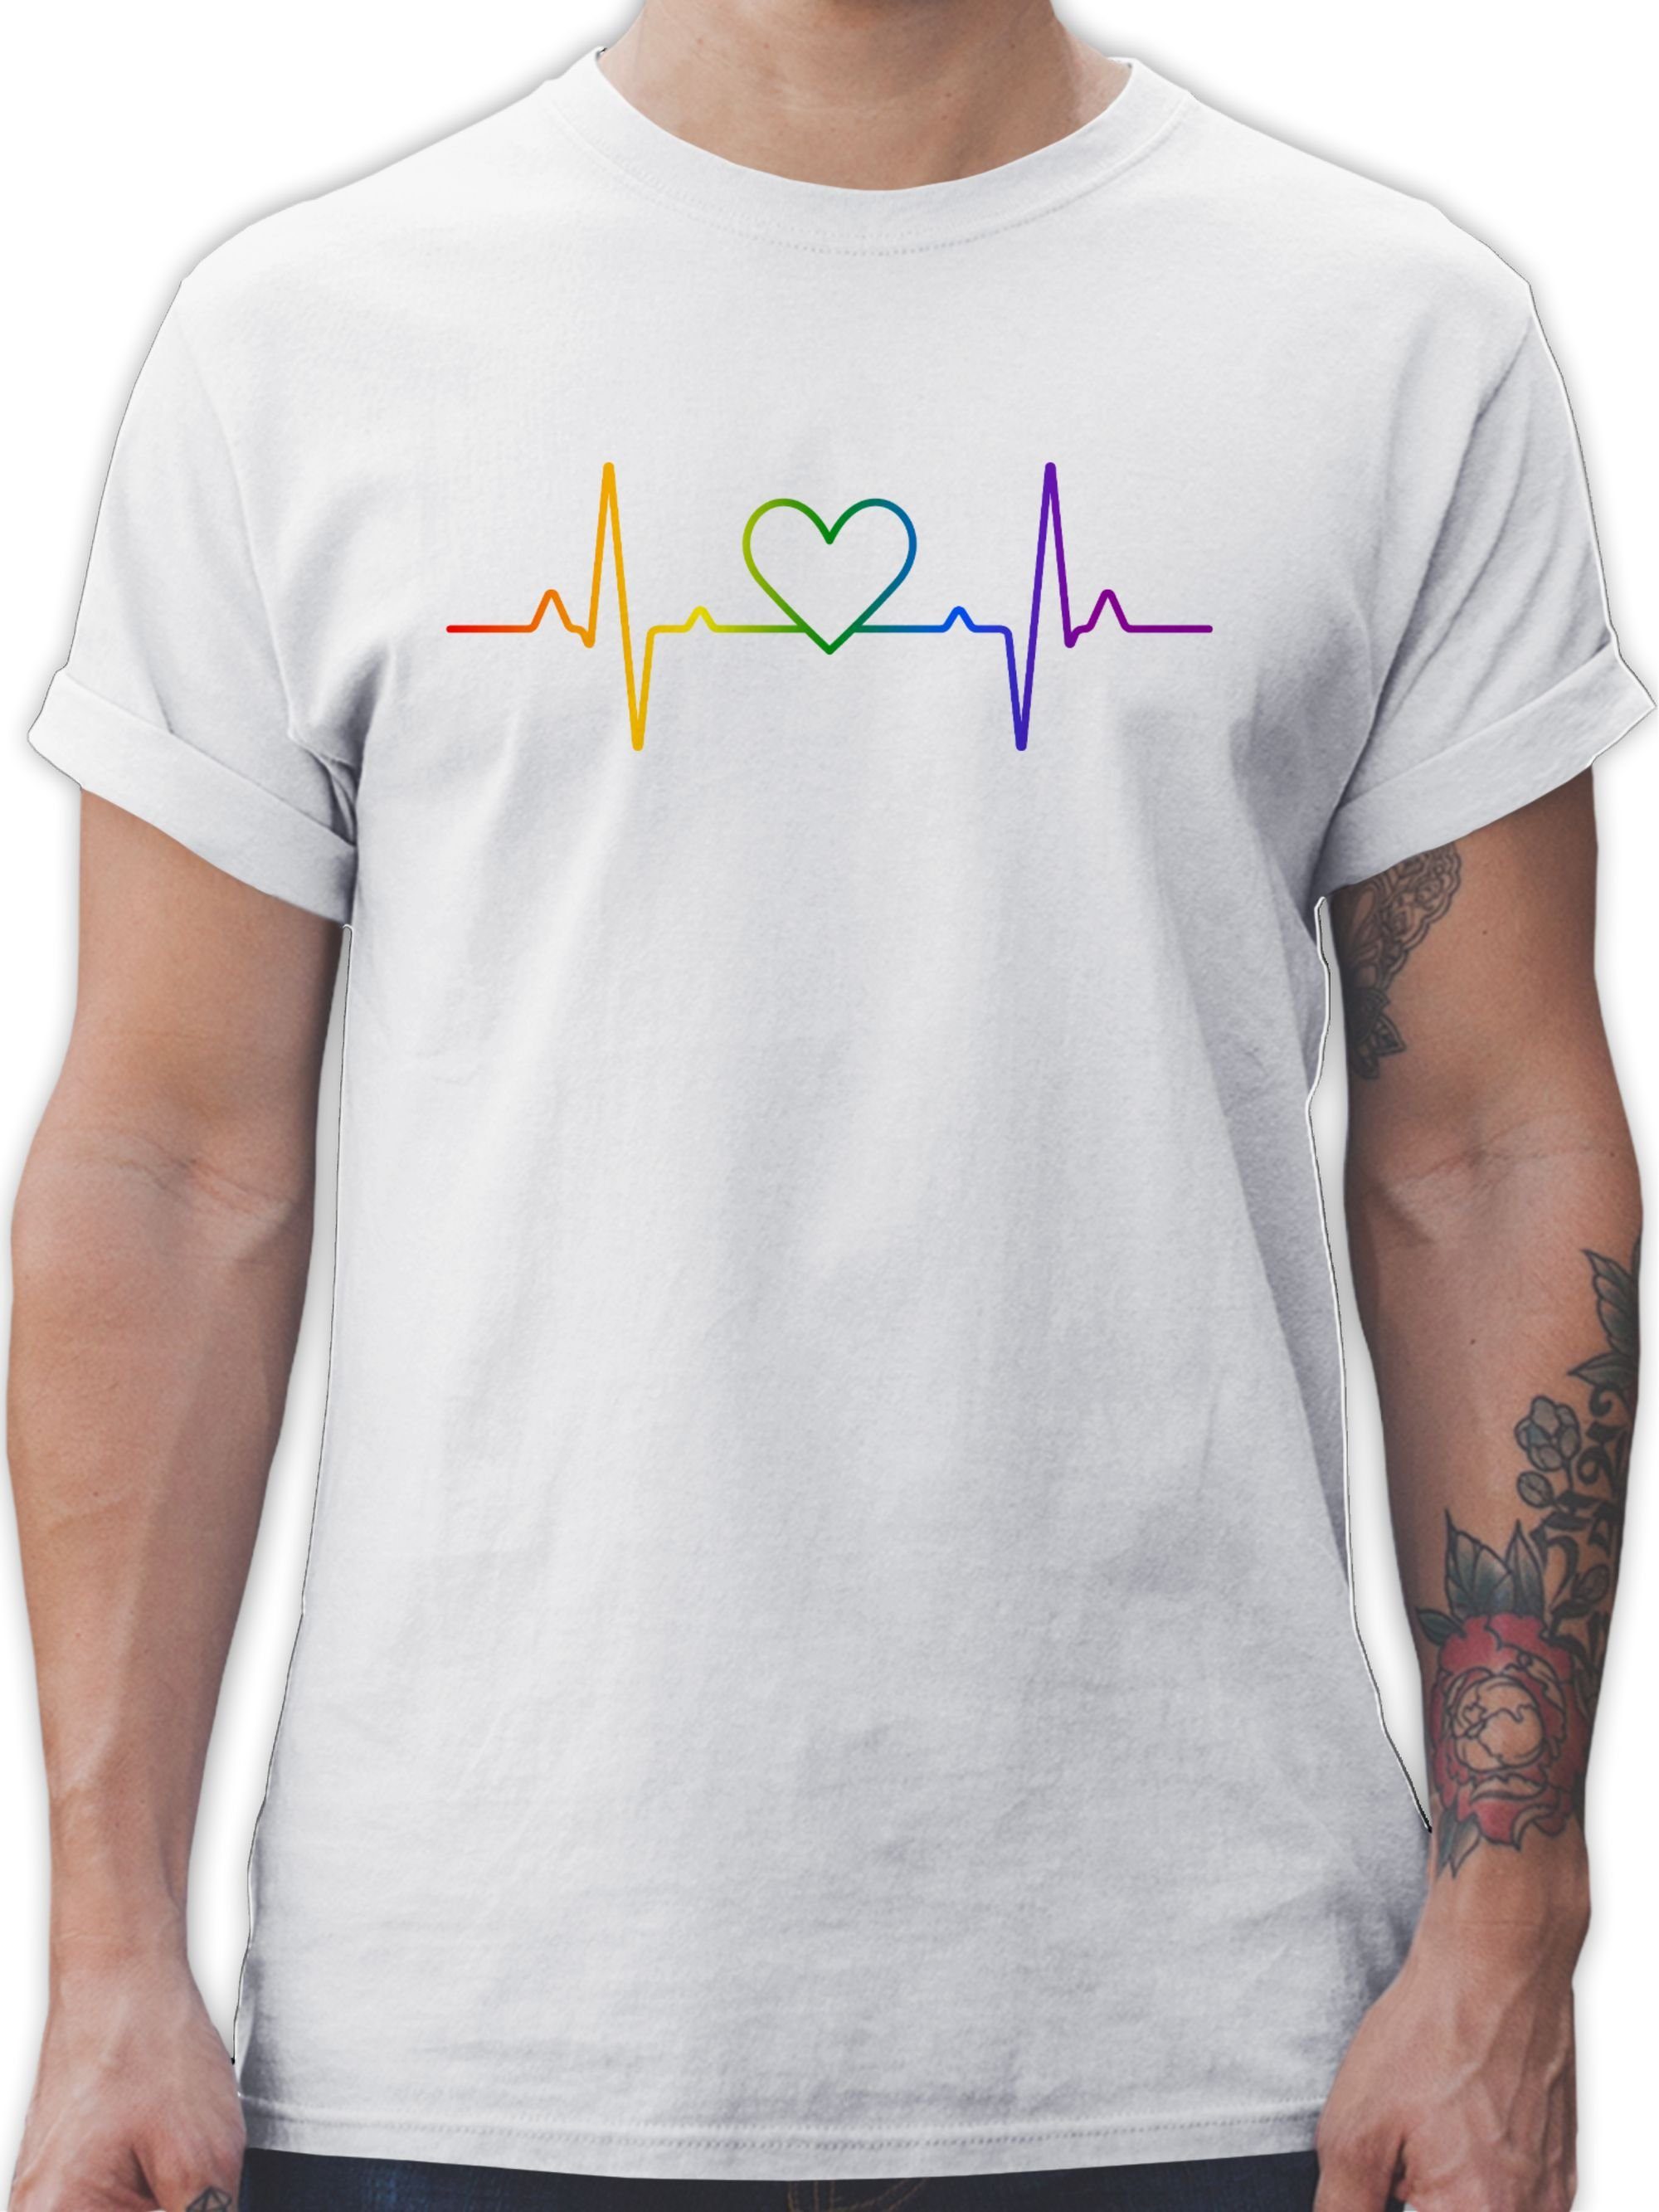 Shirtracer T-Shirt Herzschlag Regenbogen Pride LGBT Kleidung 01 Weiß